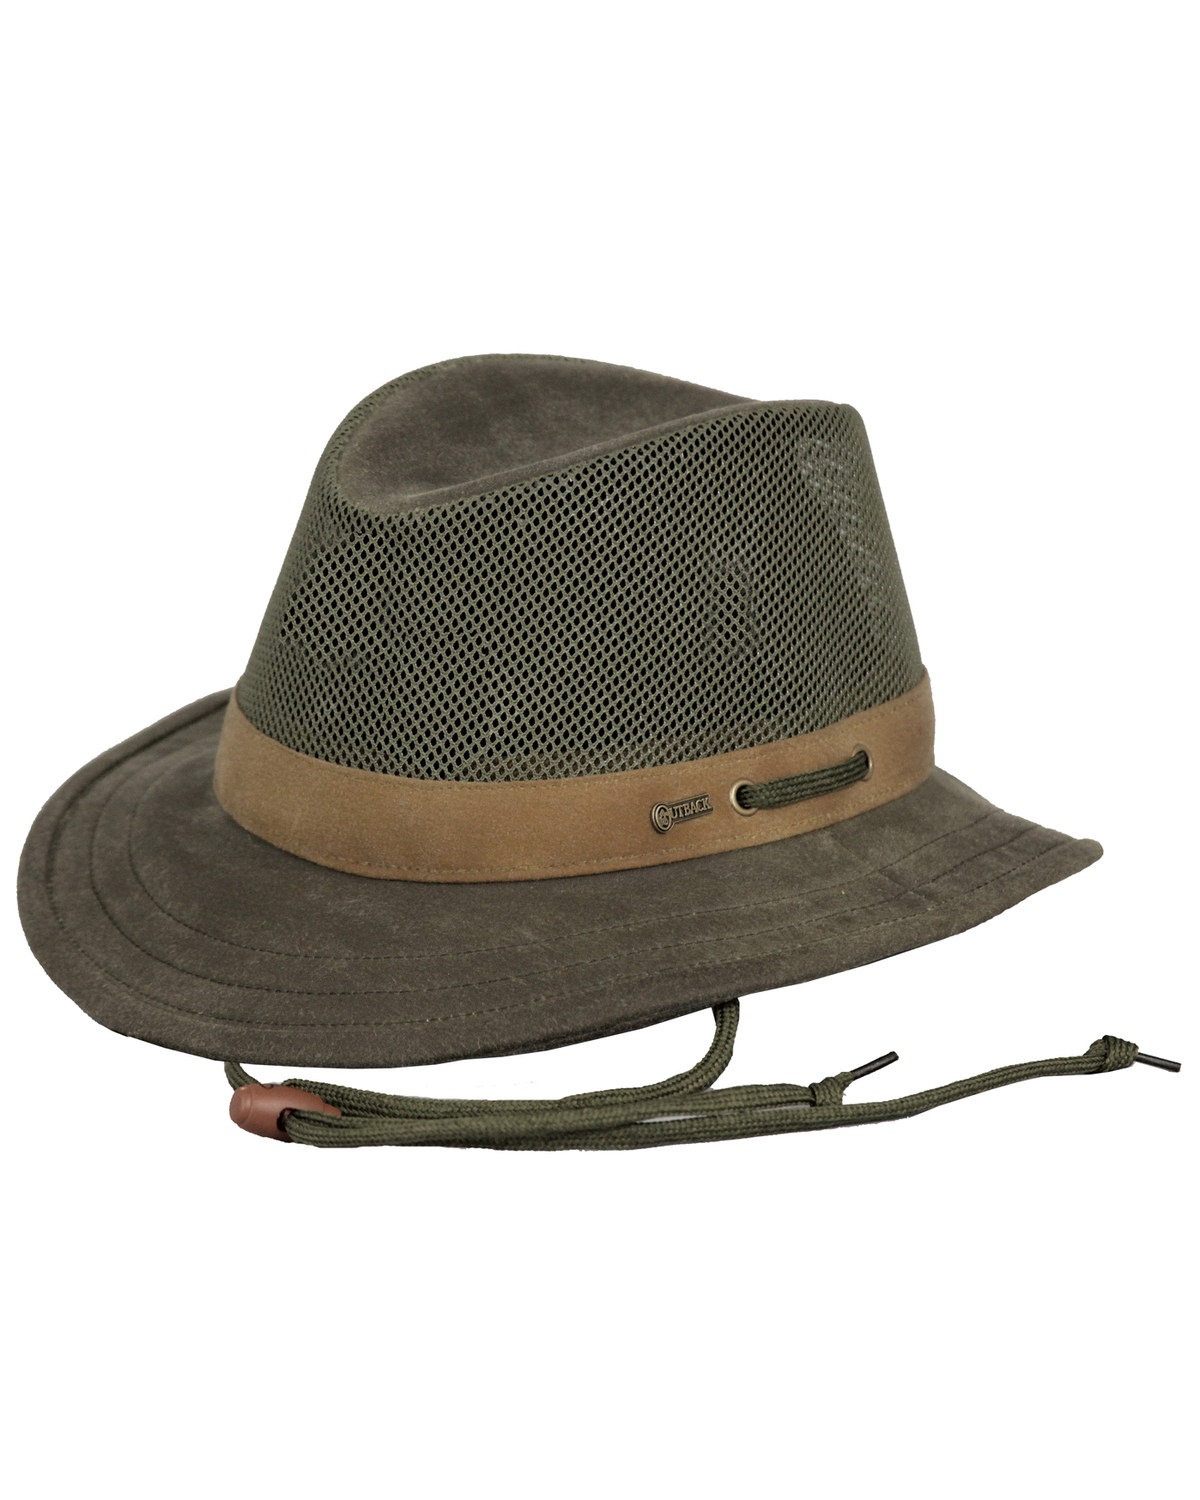 Outback Trading Co. Men's Oilskin Willis Mesh Hat